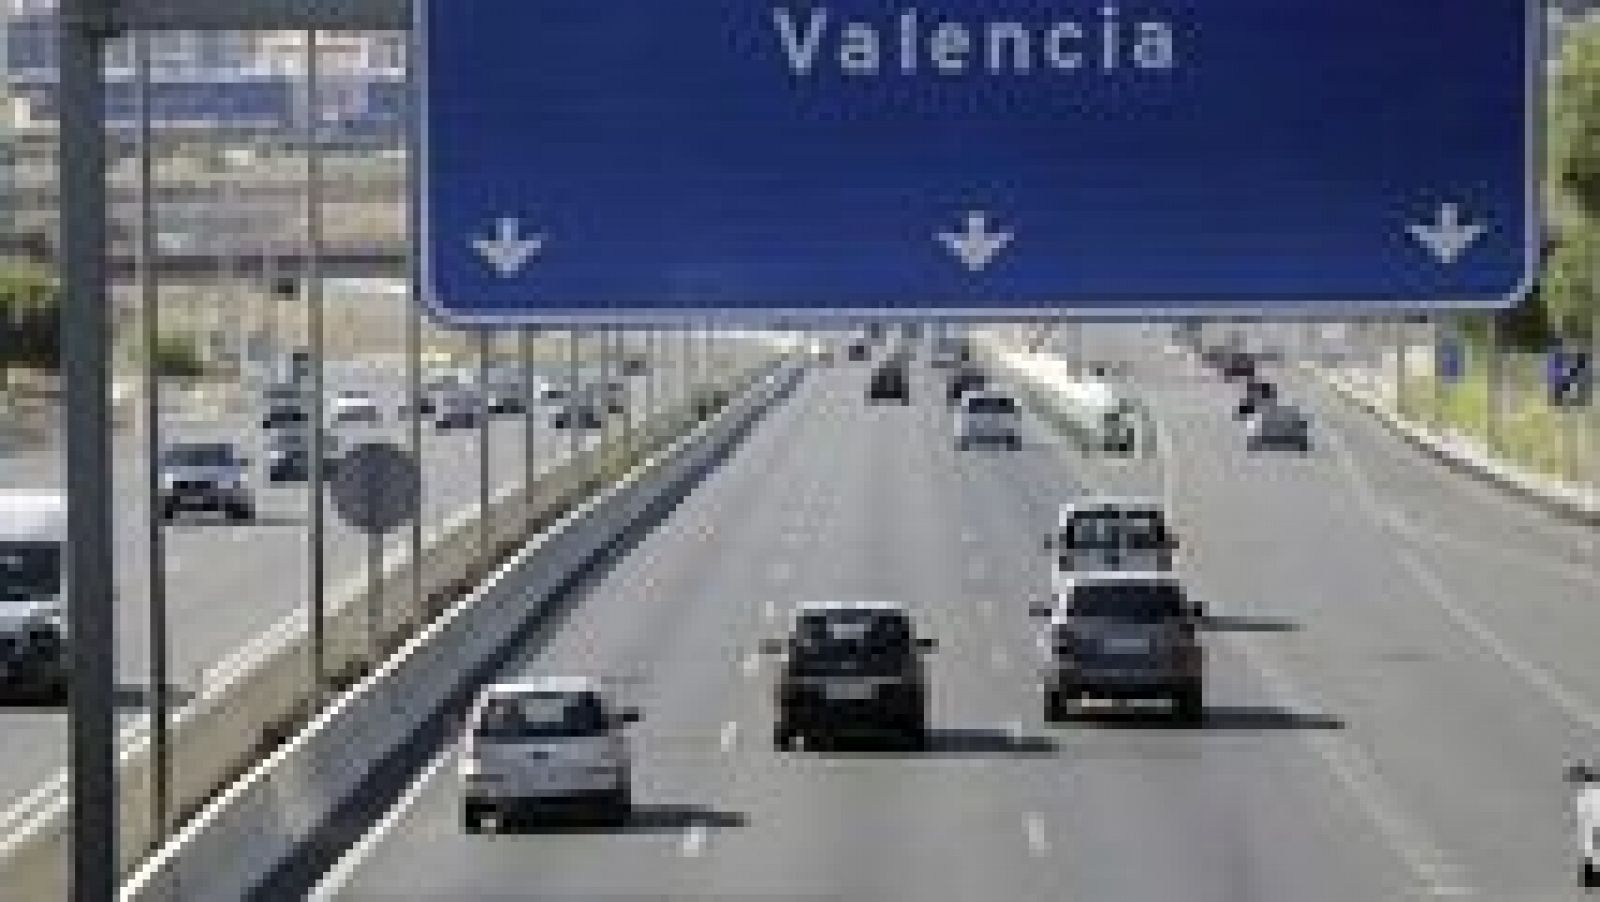 L'informatiu - Comunitat Valenciana: La Comunidad Valenciana en 2' - 03/08/15 | RTVE Play